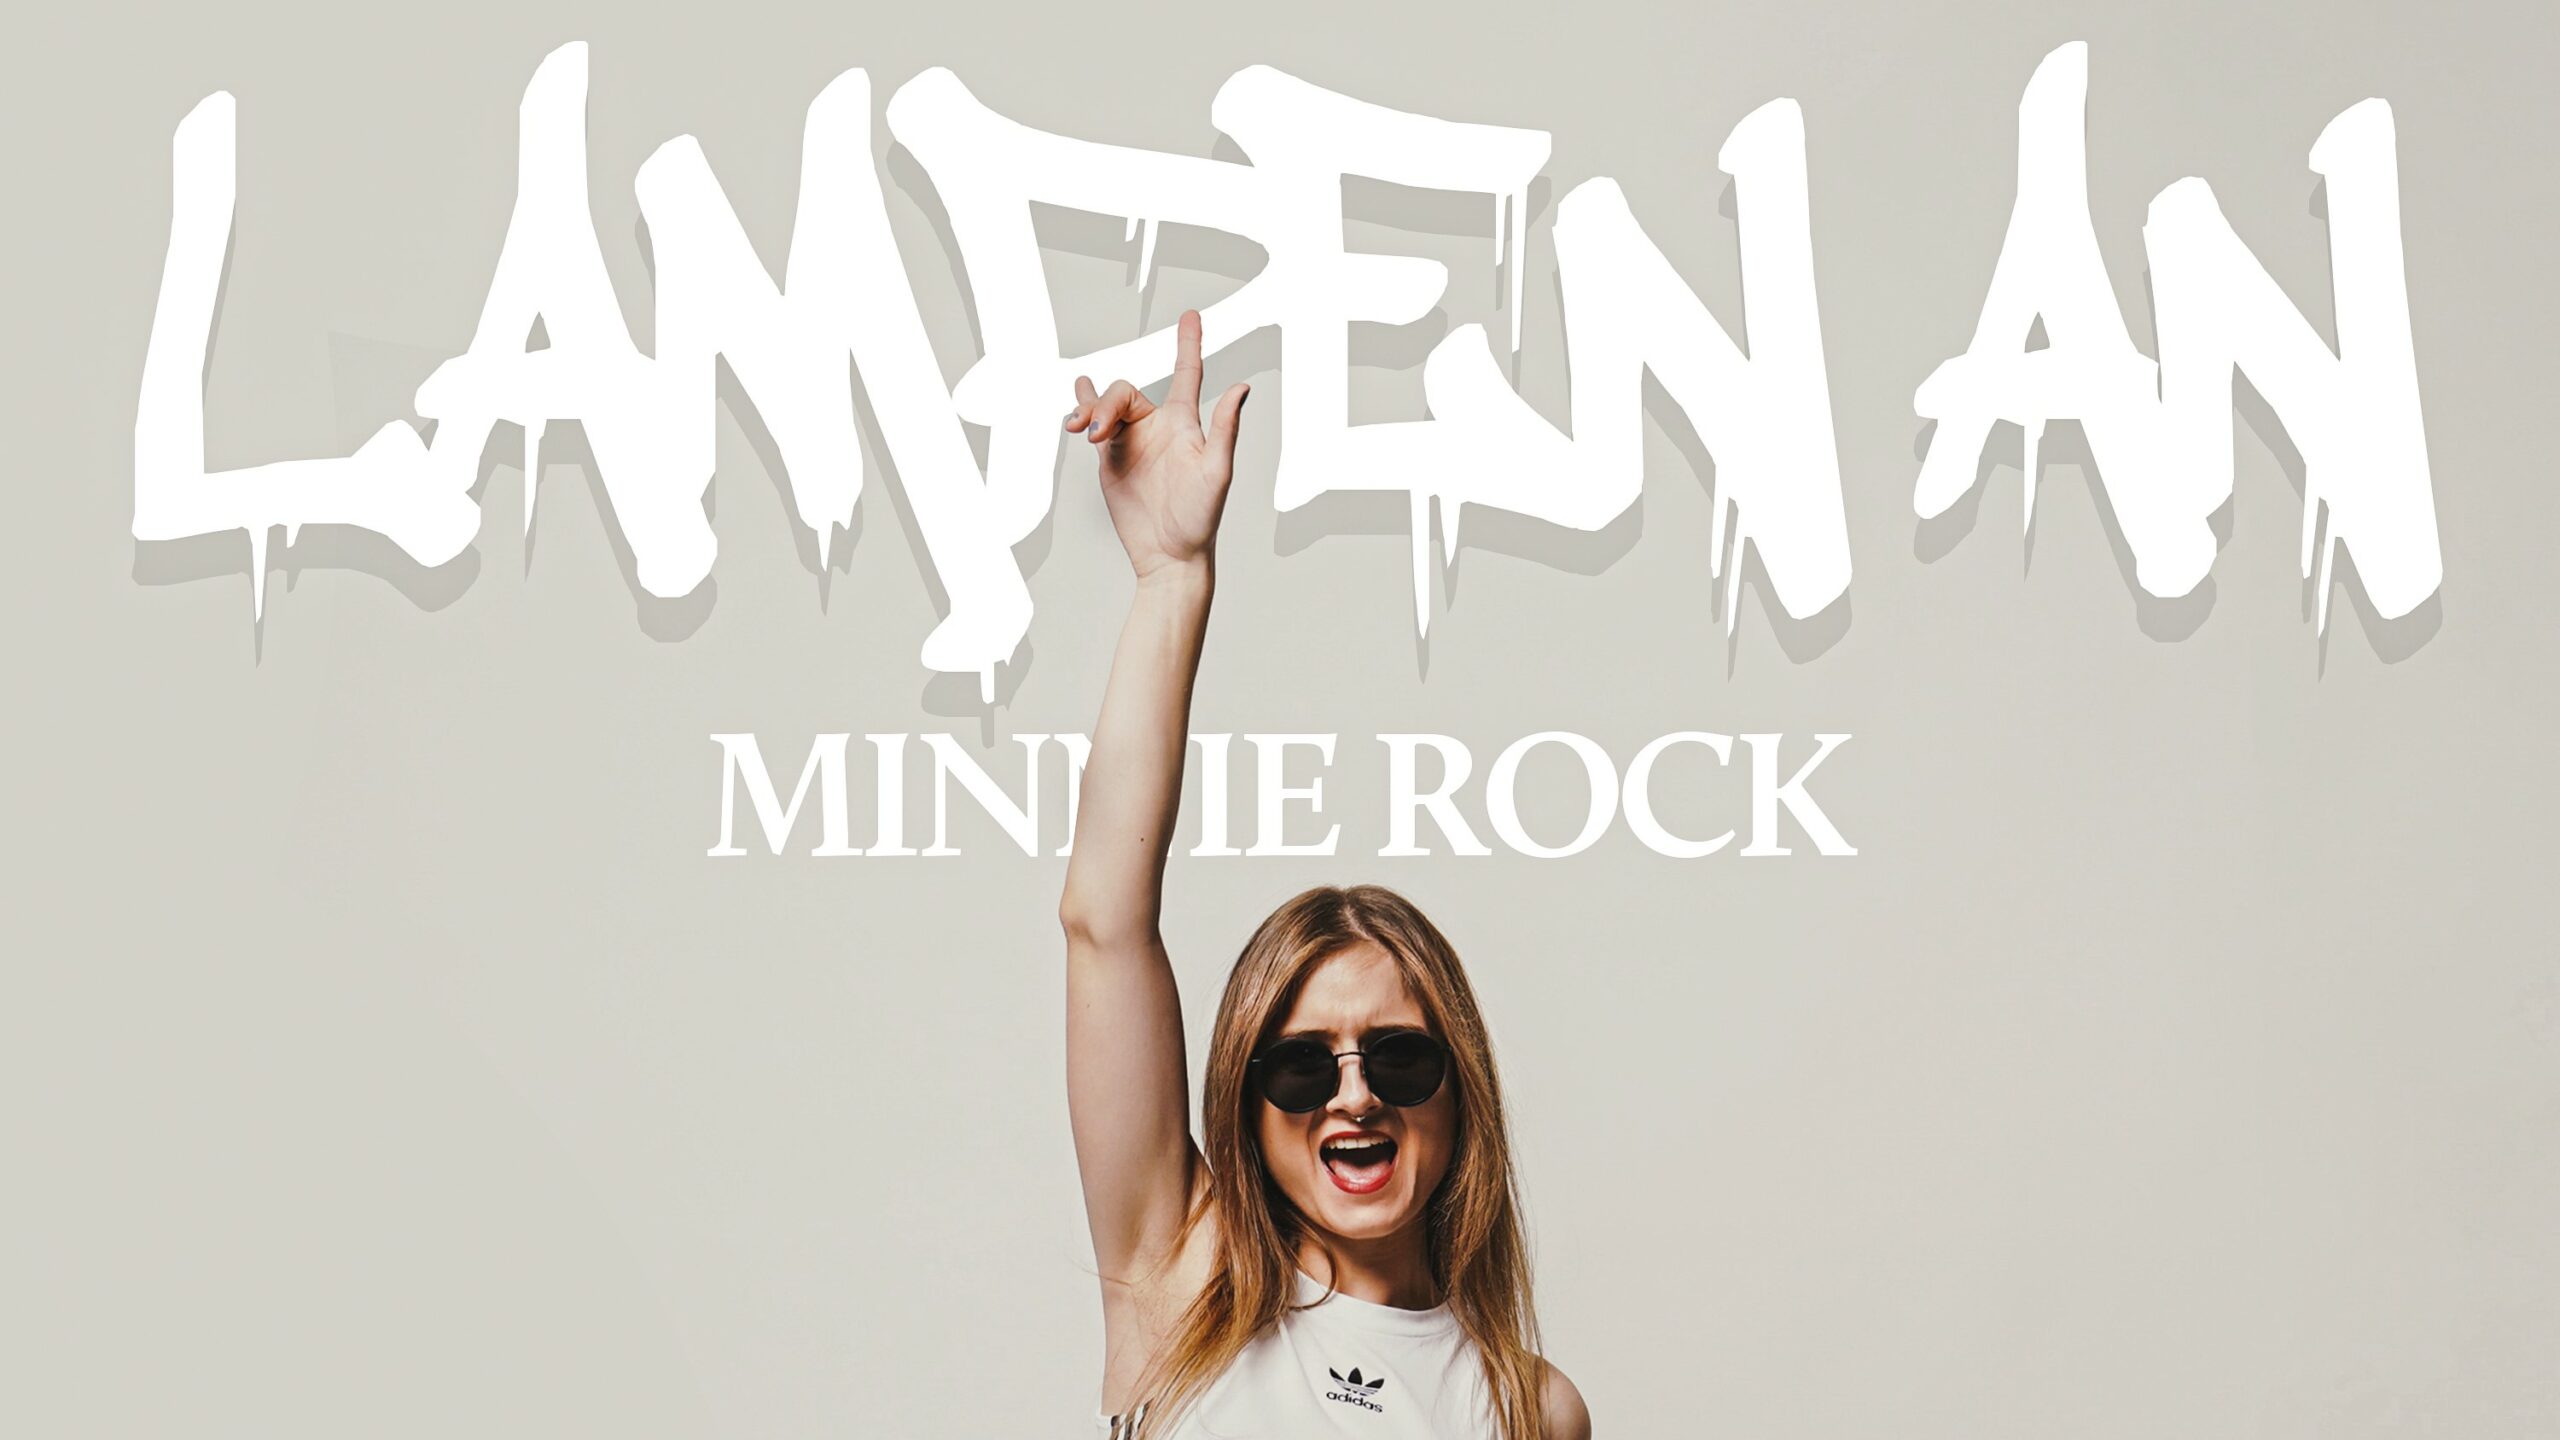 Neue Single am Start: minnie rock hat die „Lampen an“